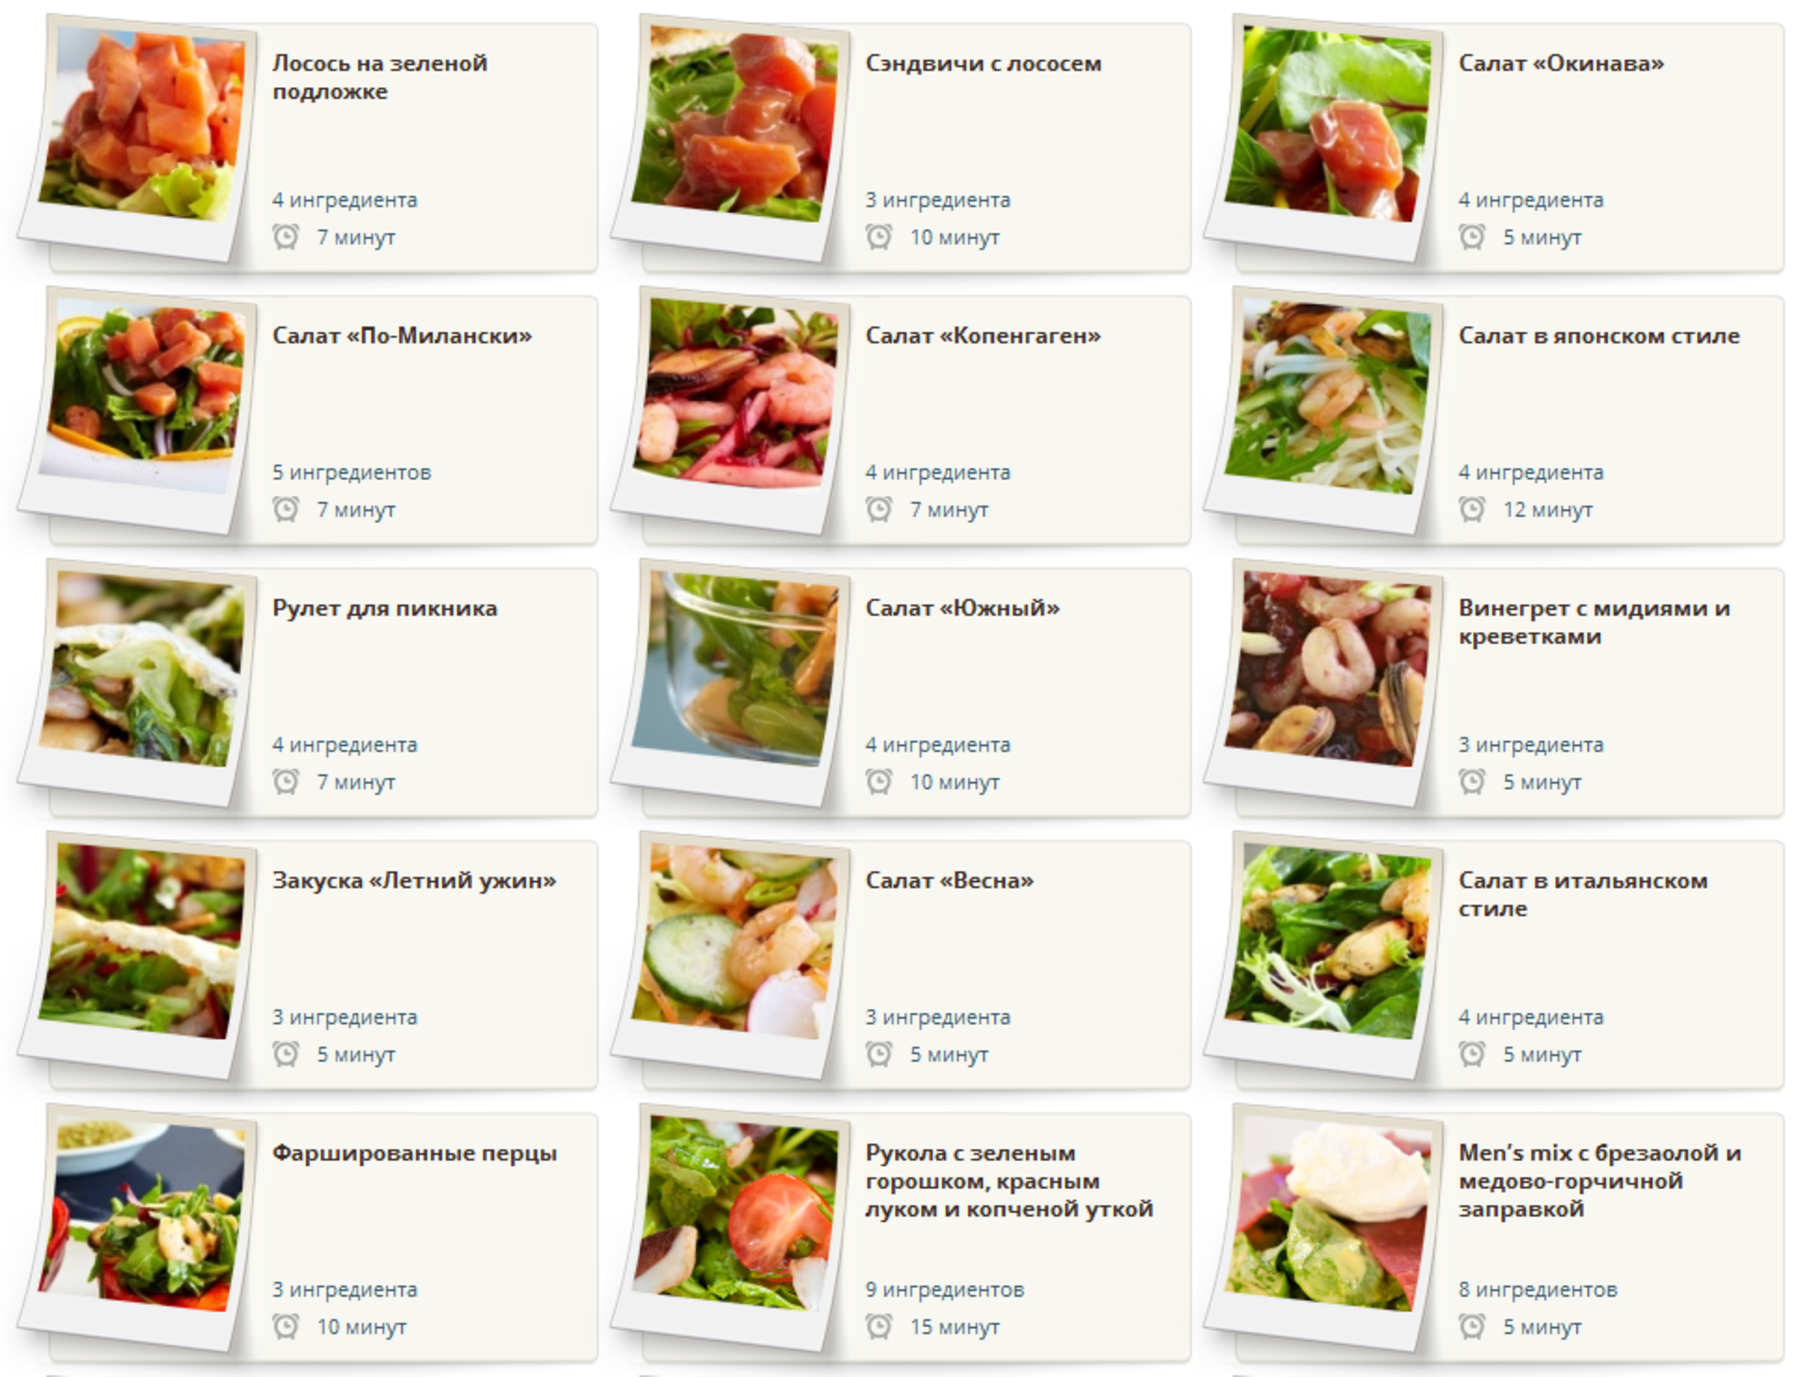 Купить рецепт рязань. Салаты меню. Название салатов. Список ингредиентов. Оригинальные названия салатов.